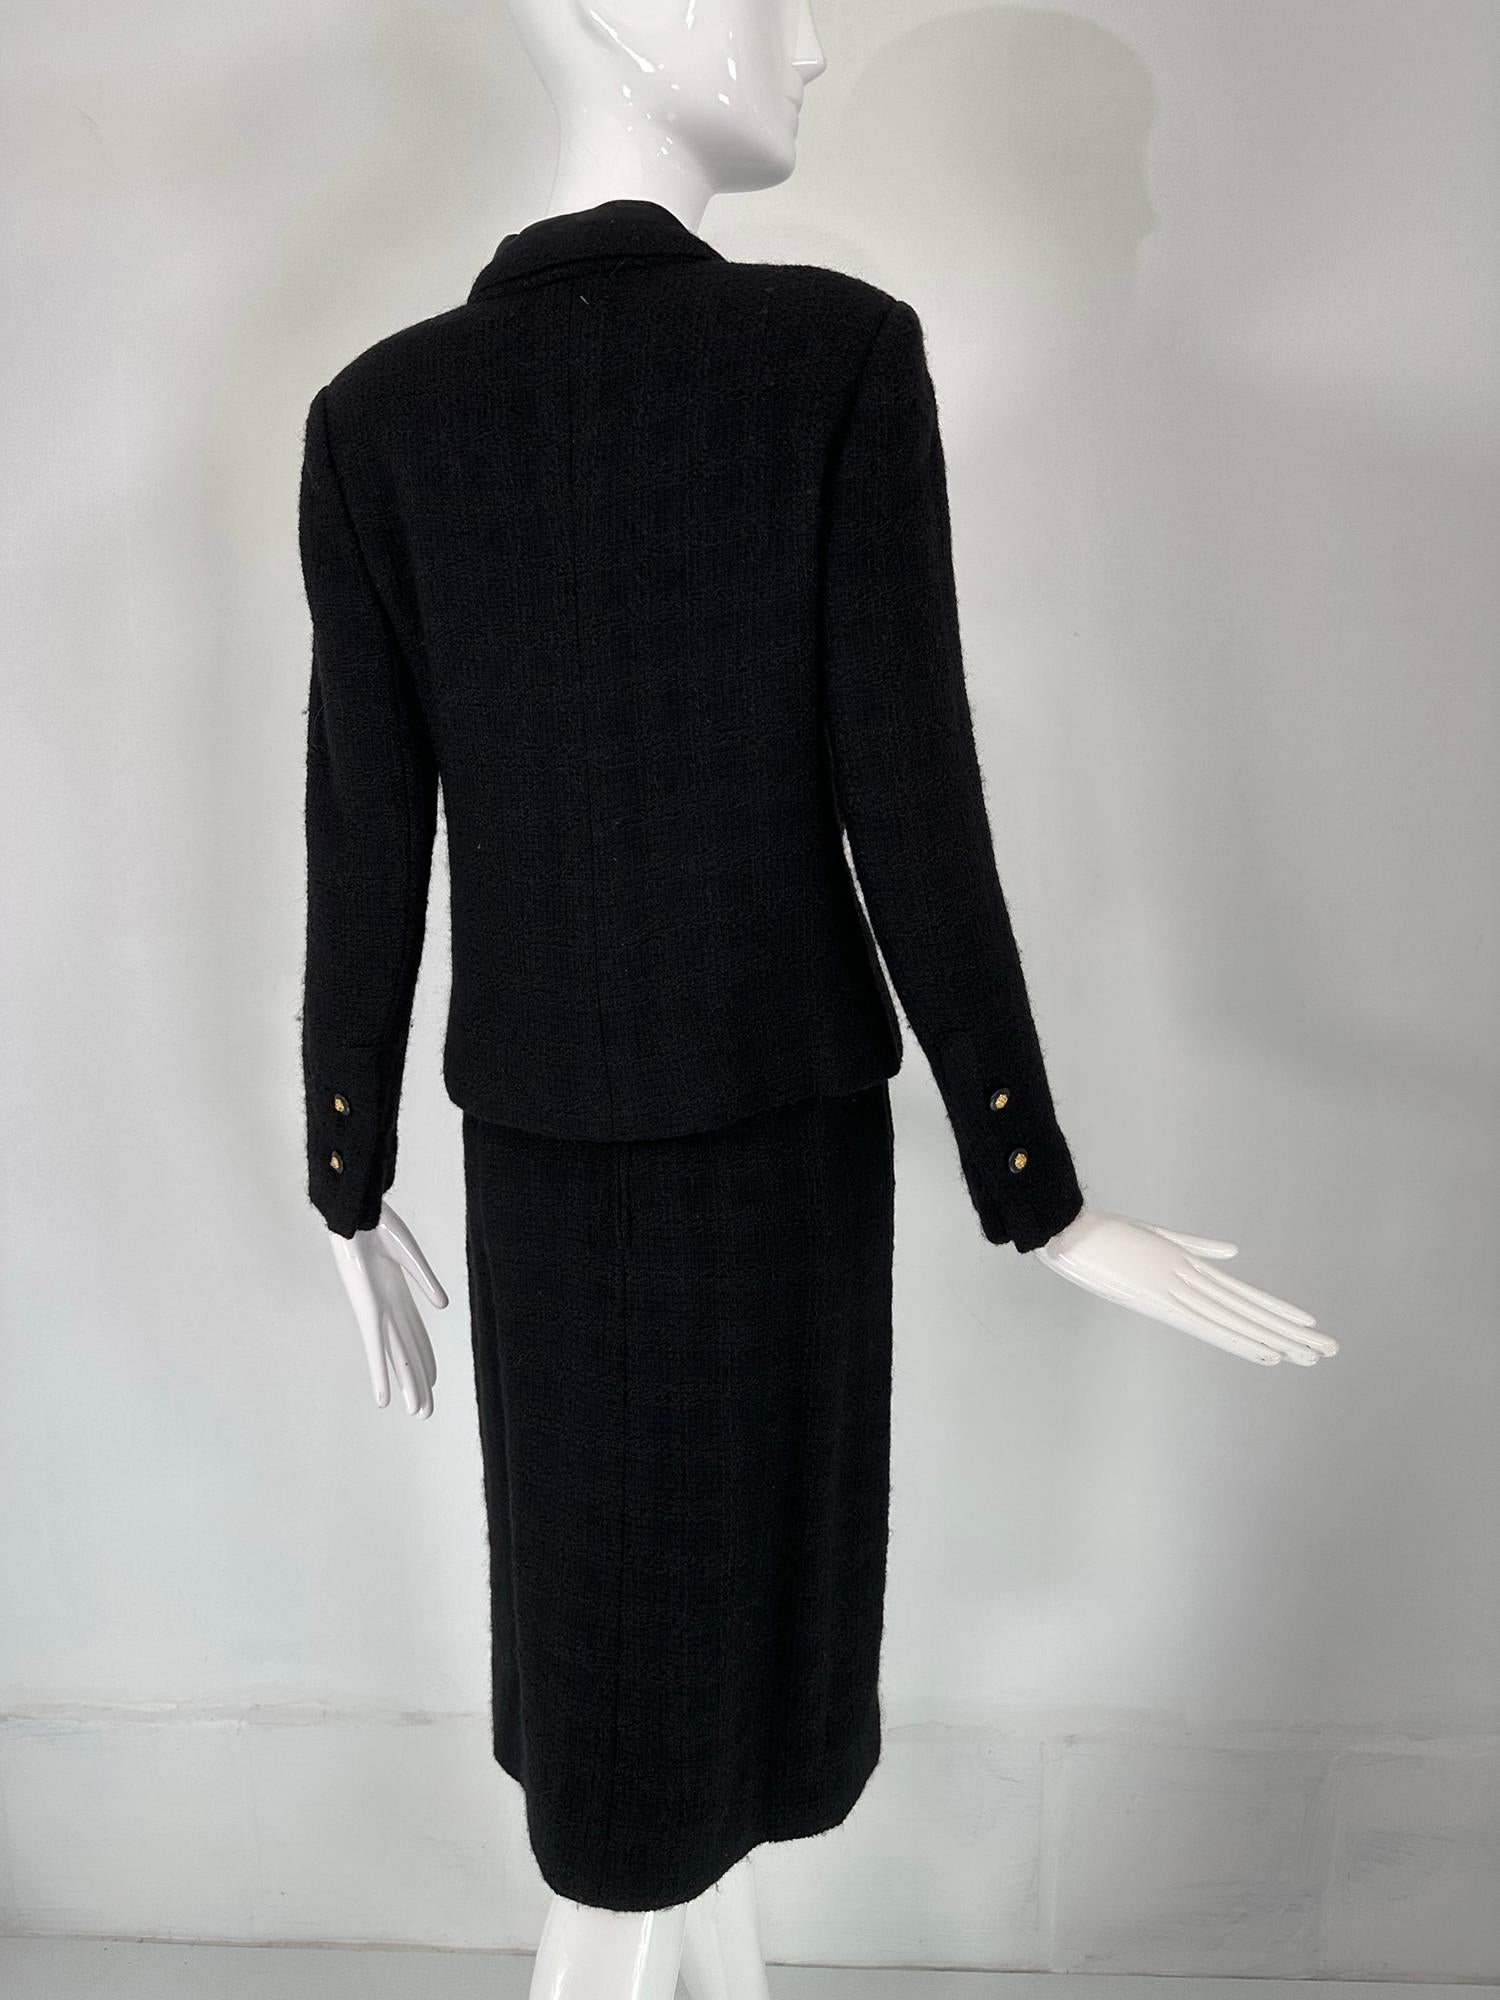 Chanel Creations-Paris Black Boucle Wool Suit 1971 For Sale 4